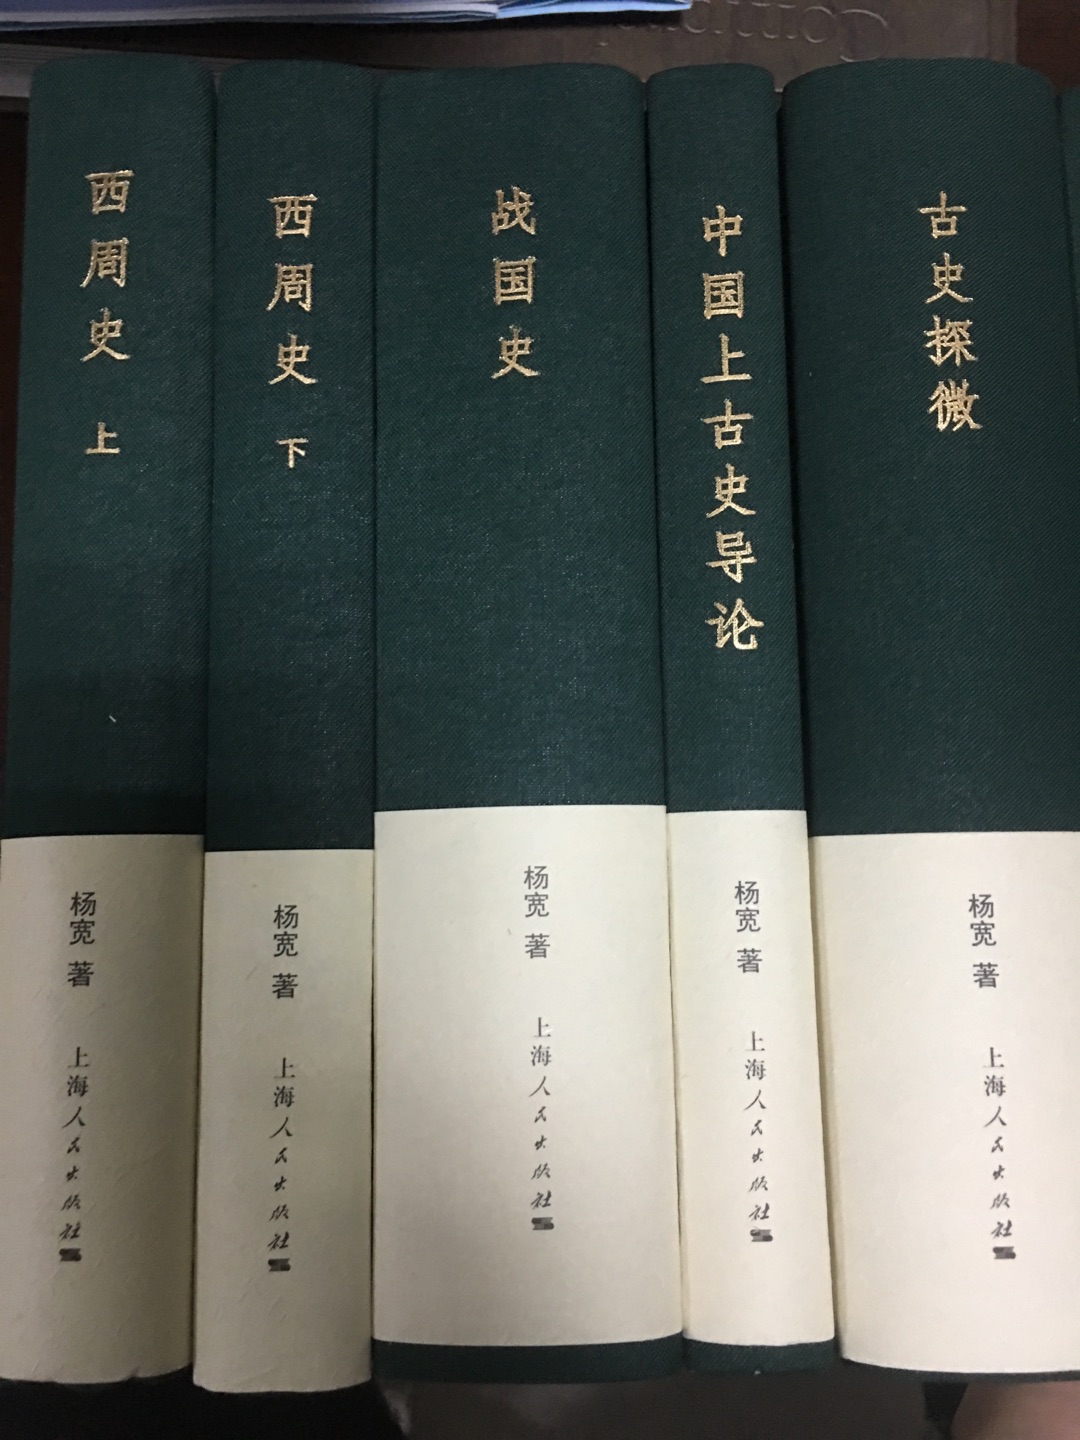 杨宽先生两部断代史，尤以战国史更见功力，也是最受欢迎的著作。学习